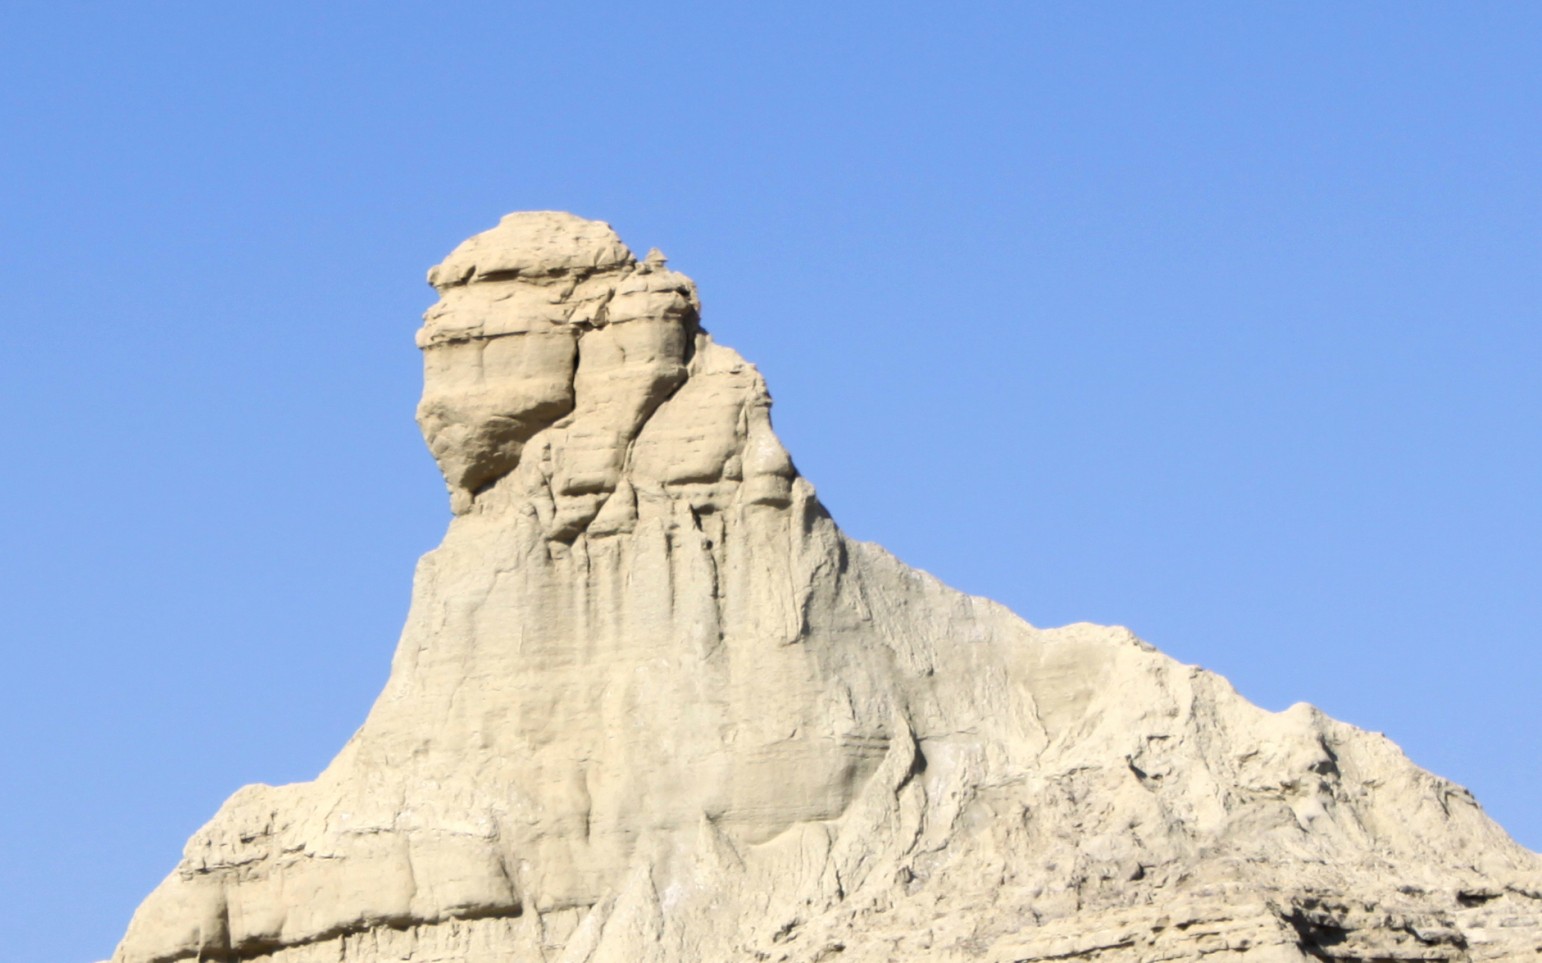 Sfinxul din Balochistan: fenomen natural sau creație umană ingenioasă? 2